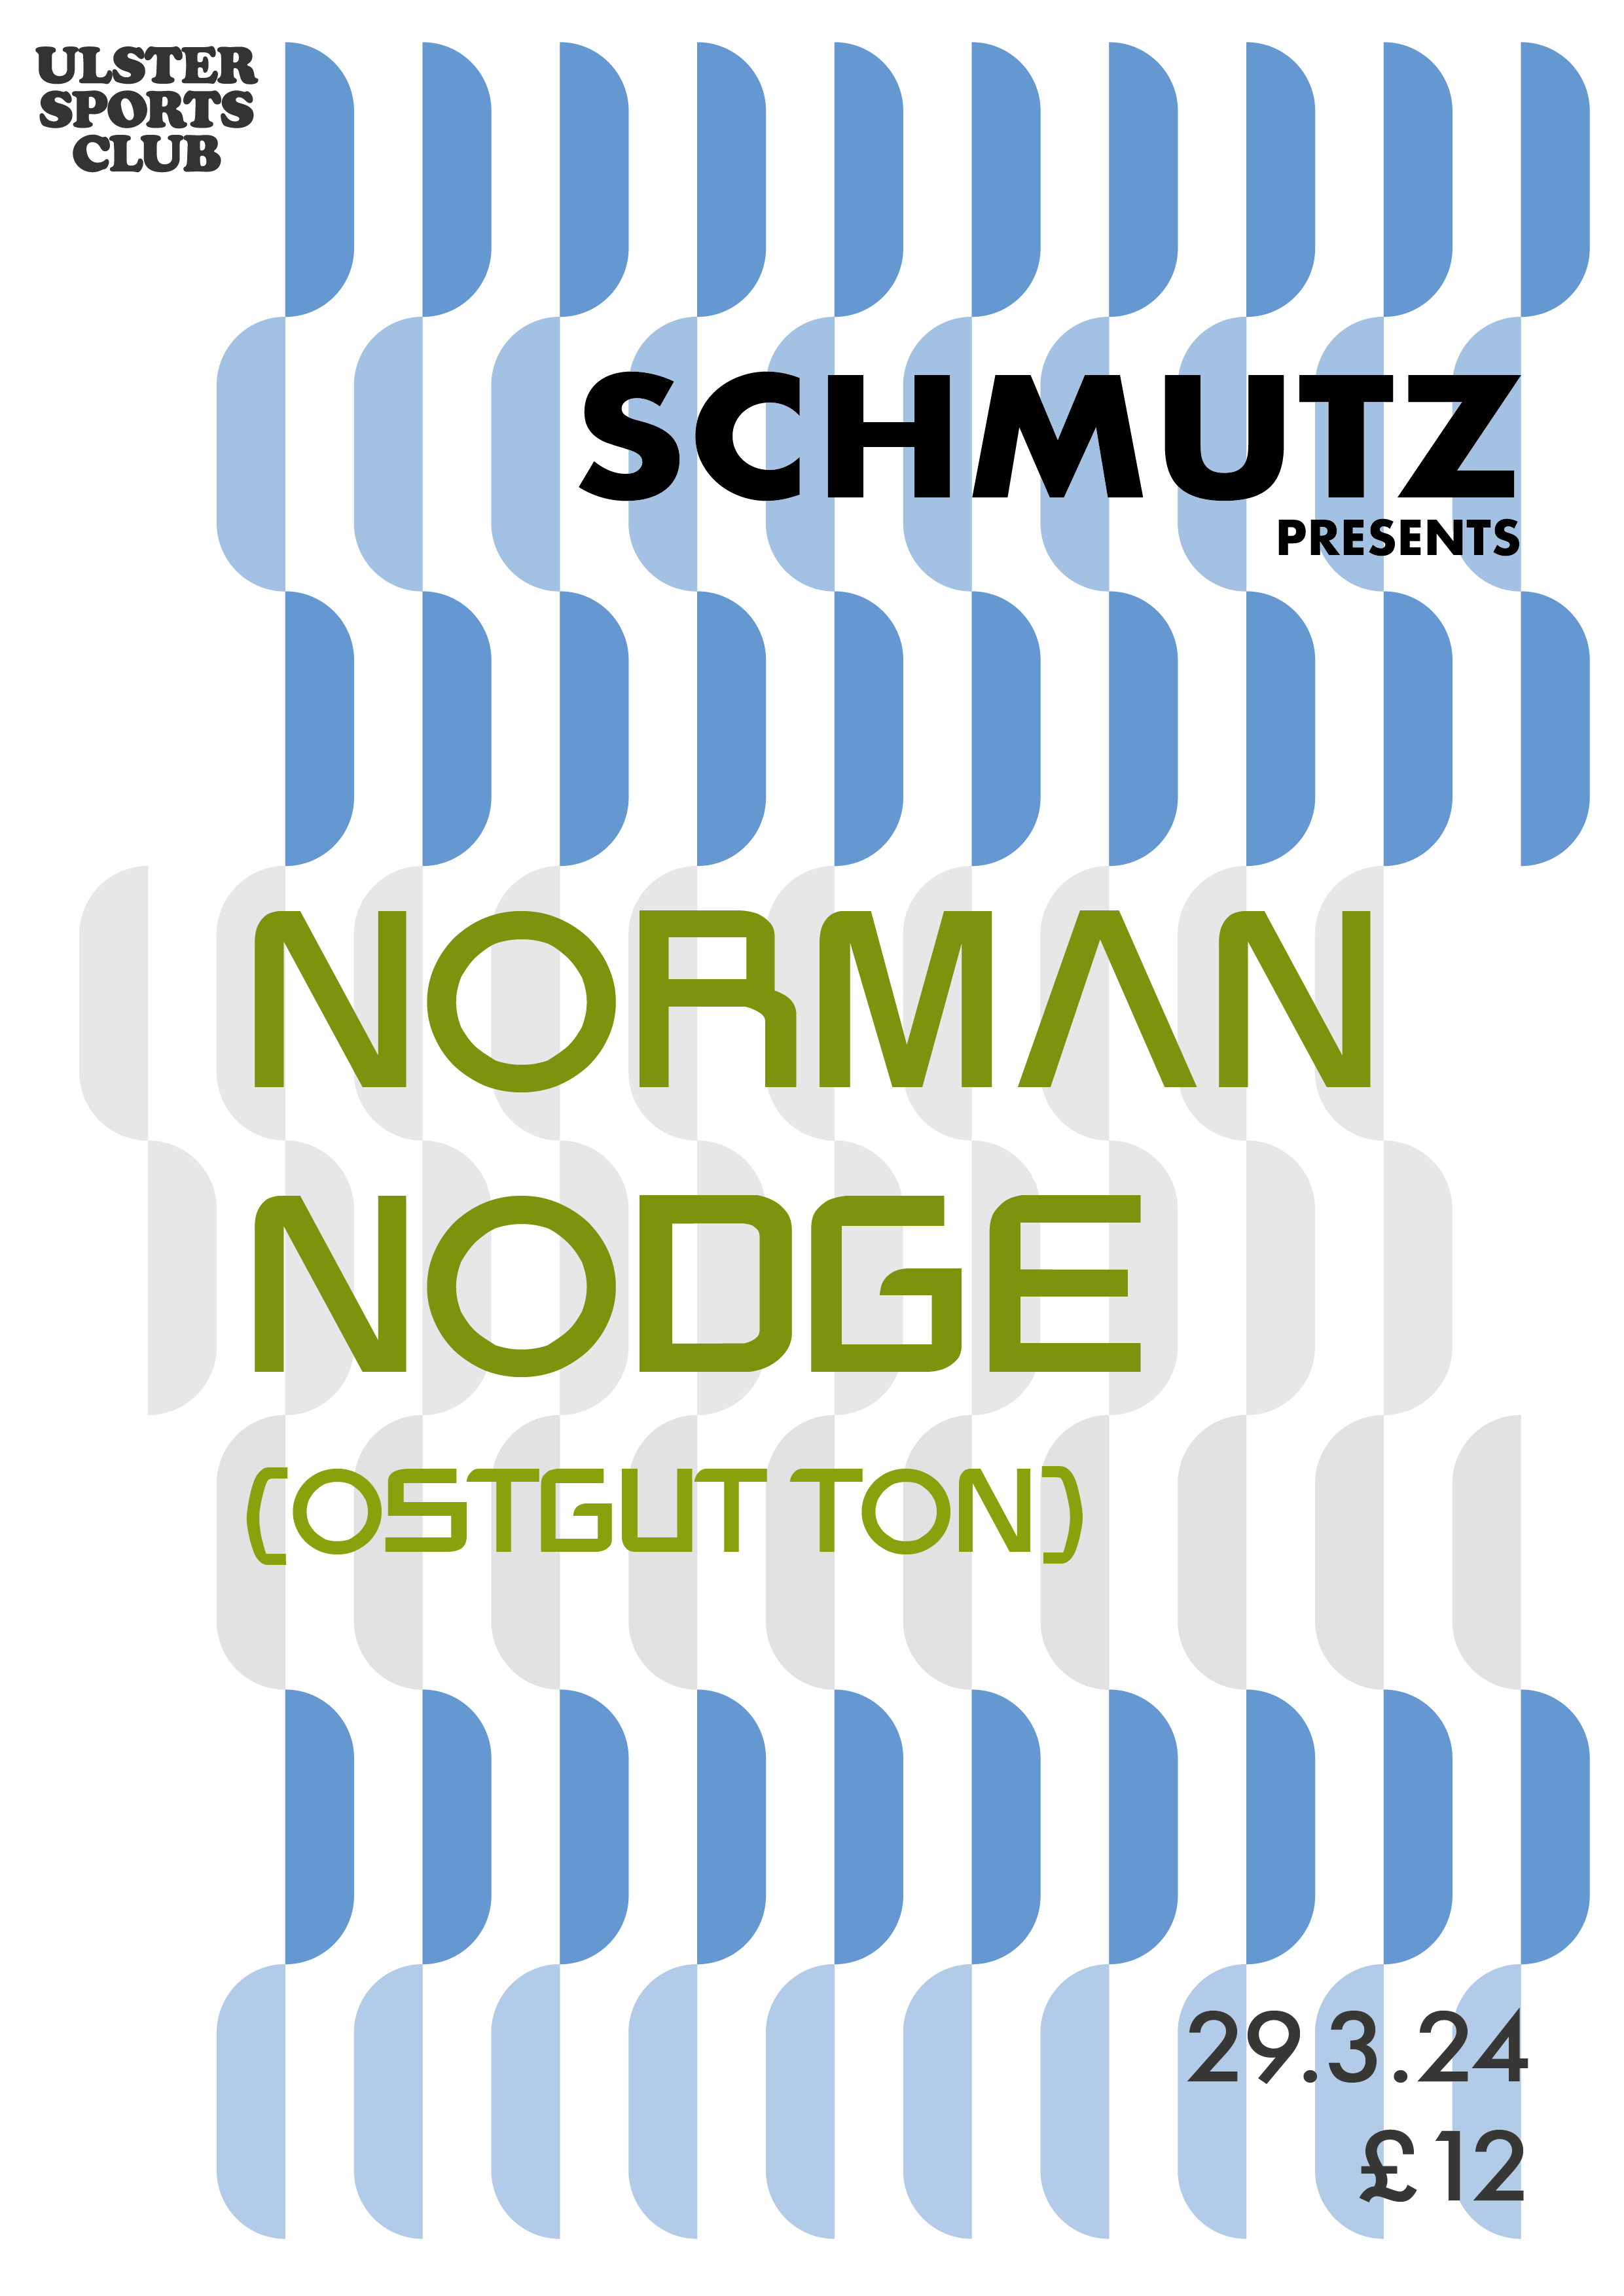 Schmutz Presents Norman Nodge (OstgutTon) - Página trasera